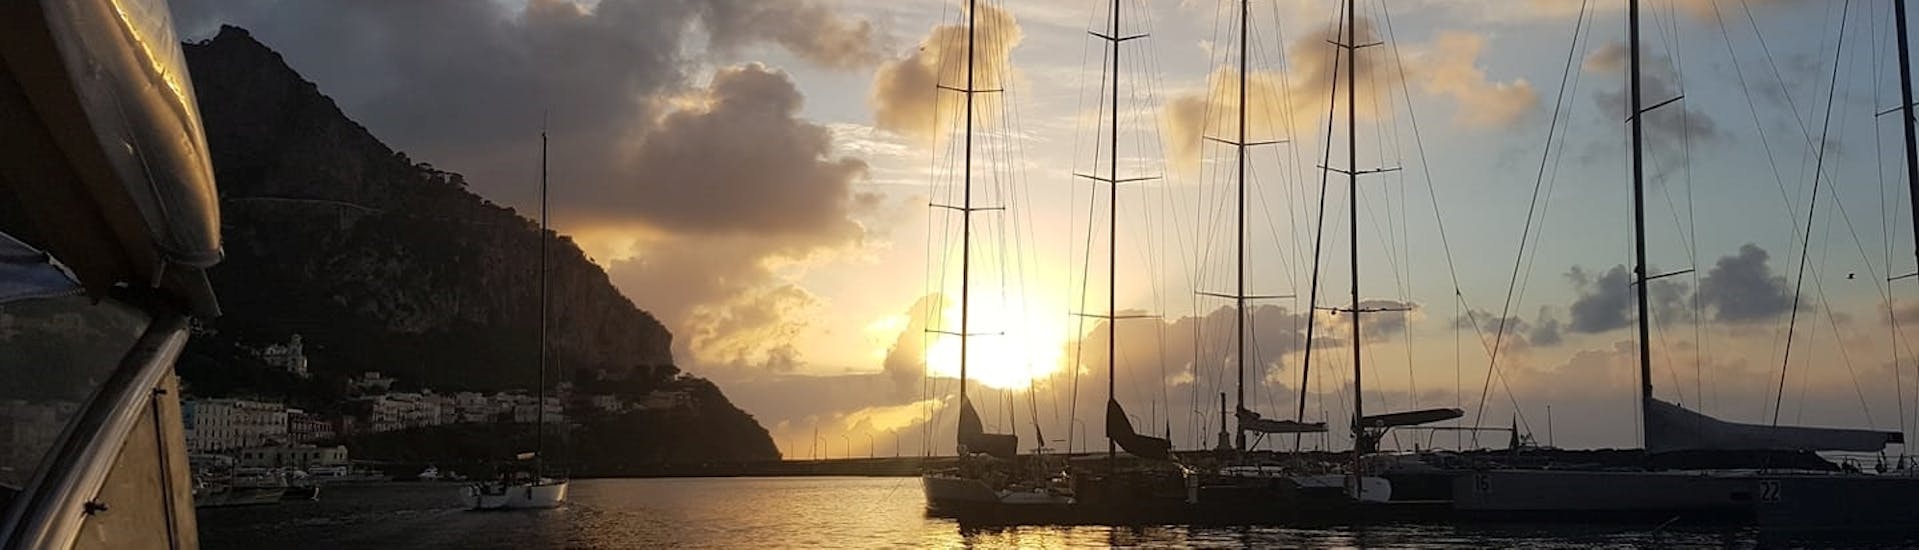 Private Bootstour entlang der Küste von Sorrento bei Sonnenuntergang.